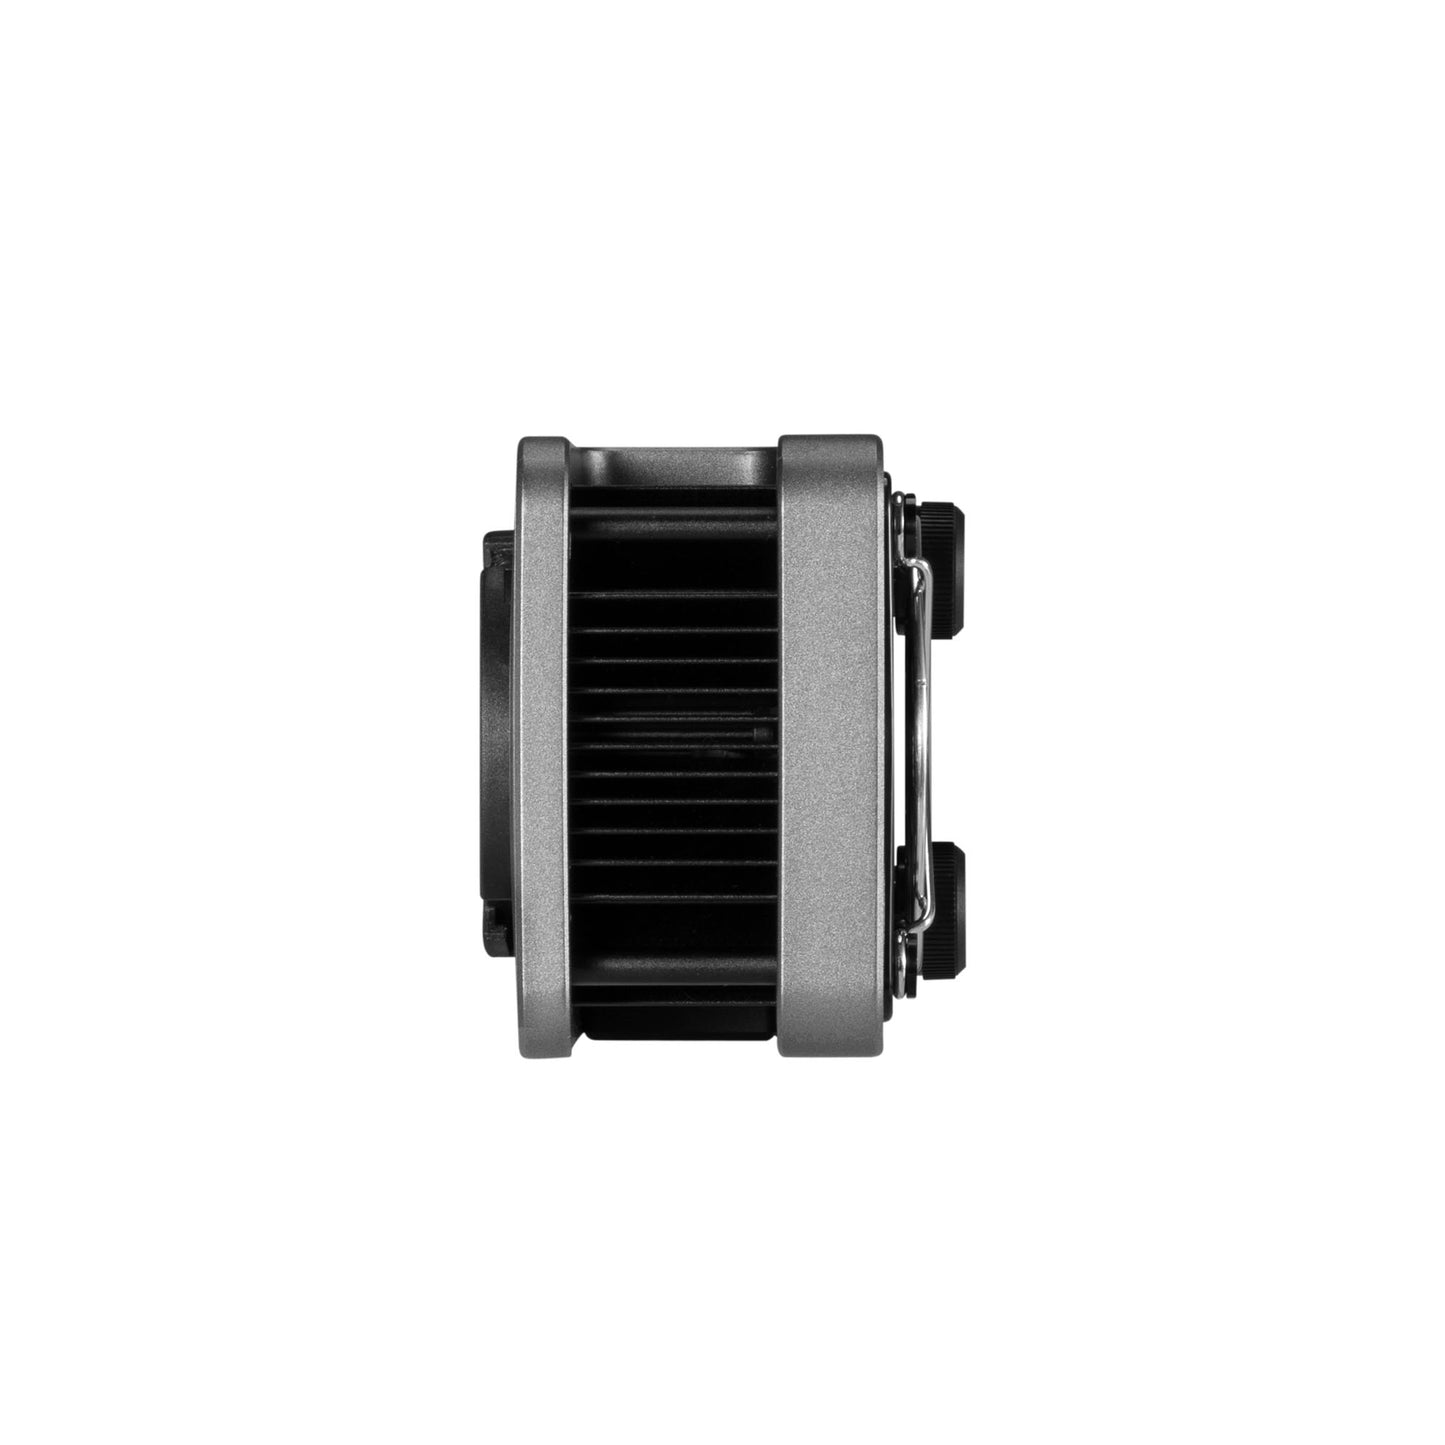 ZHIYUN Molus X60 60W バイカラー LED ビデオライト